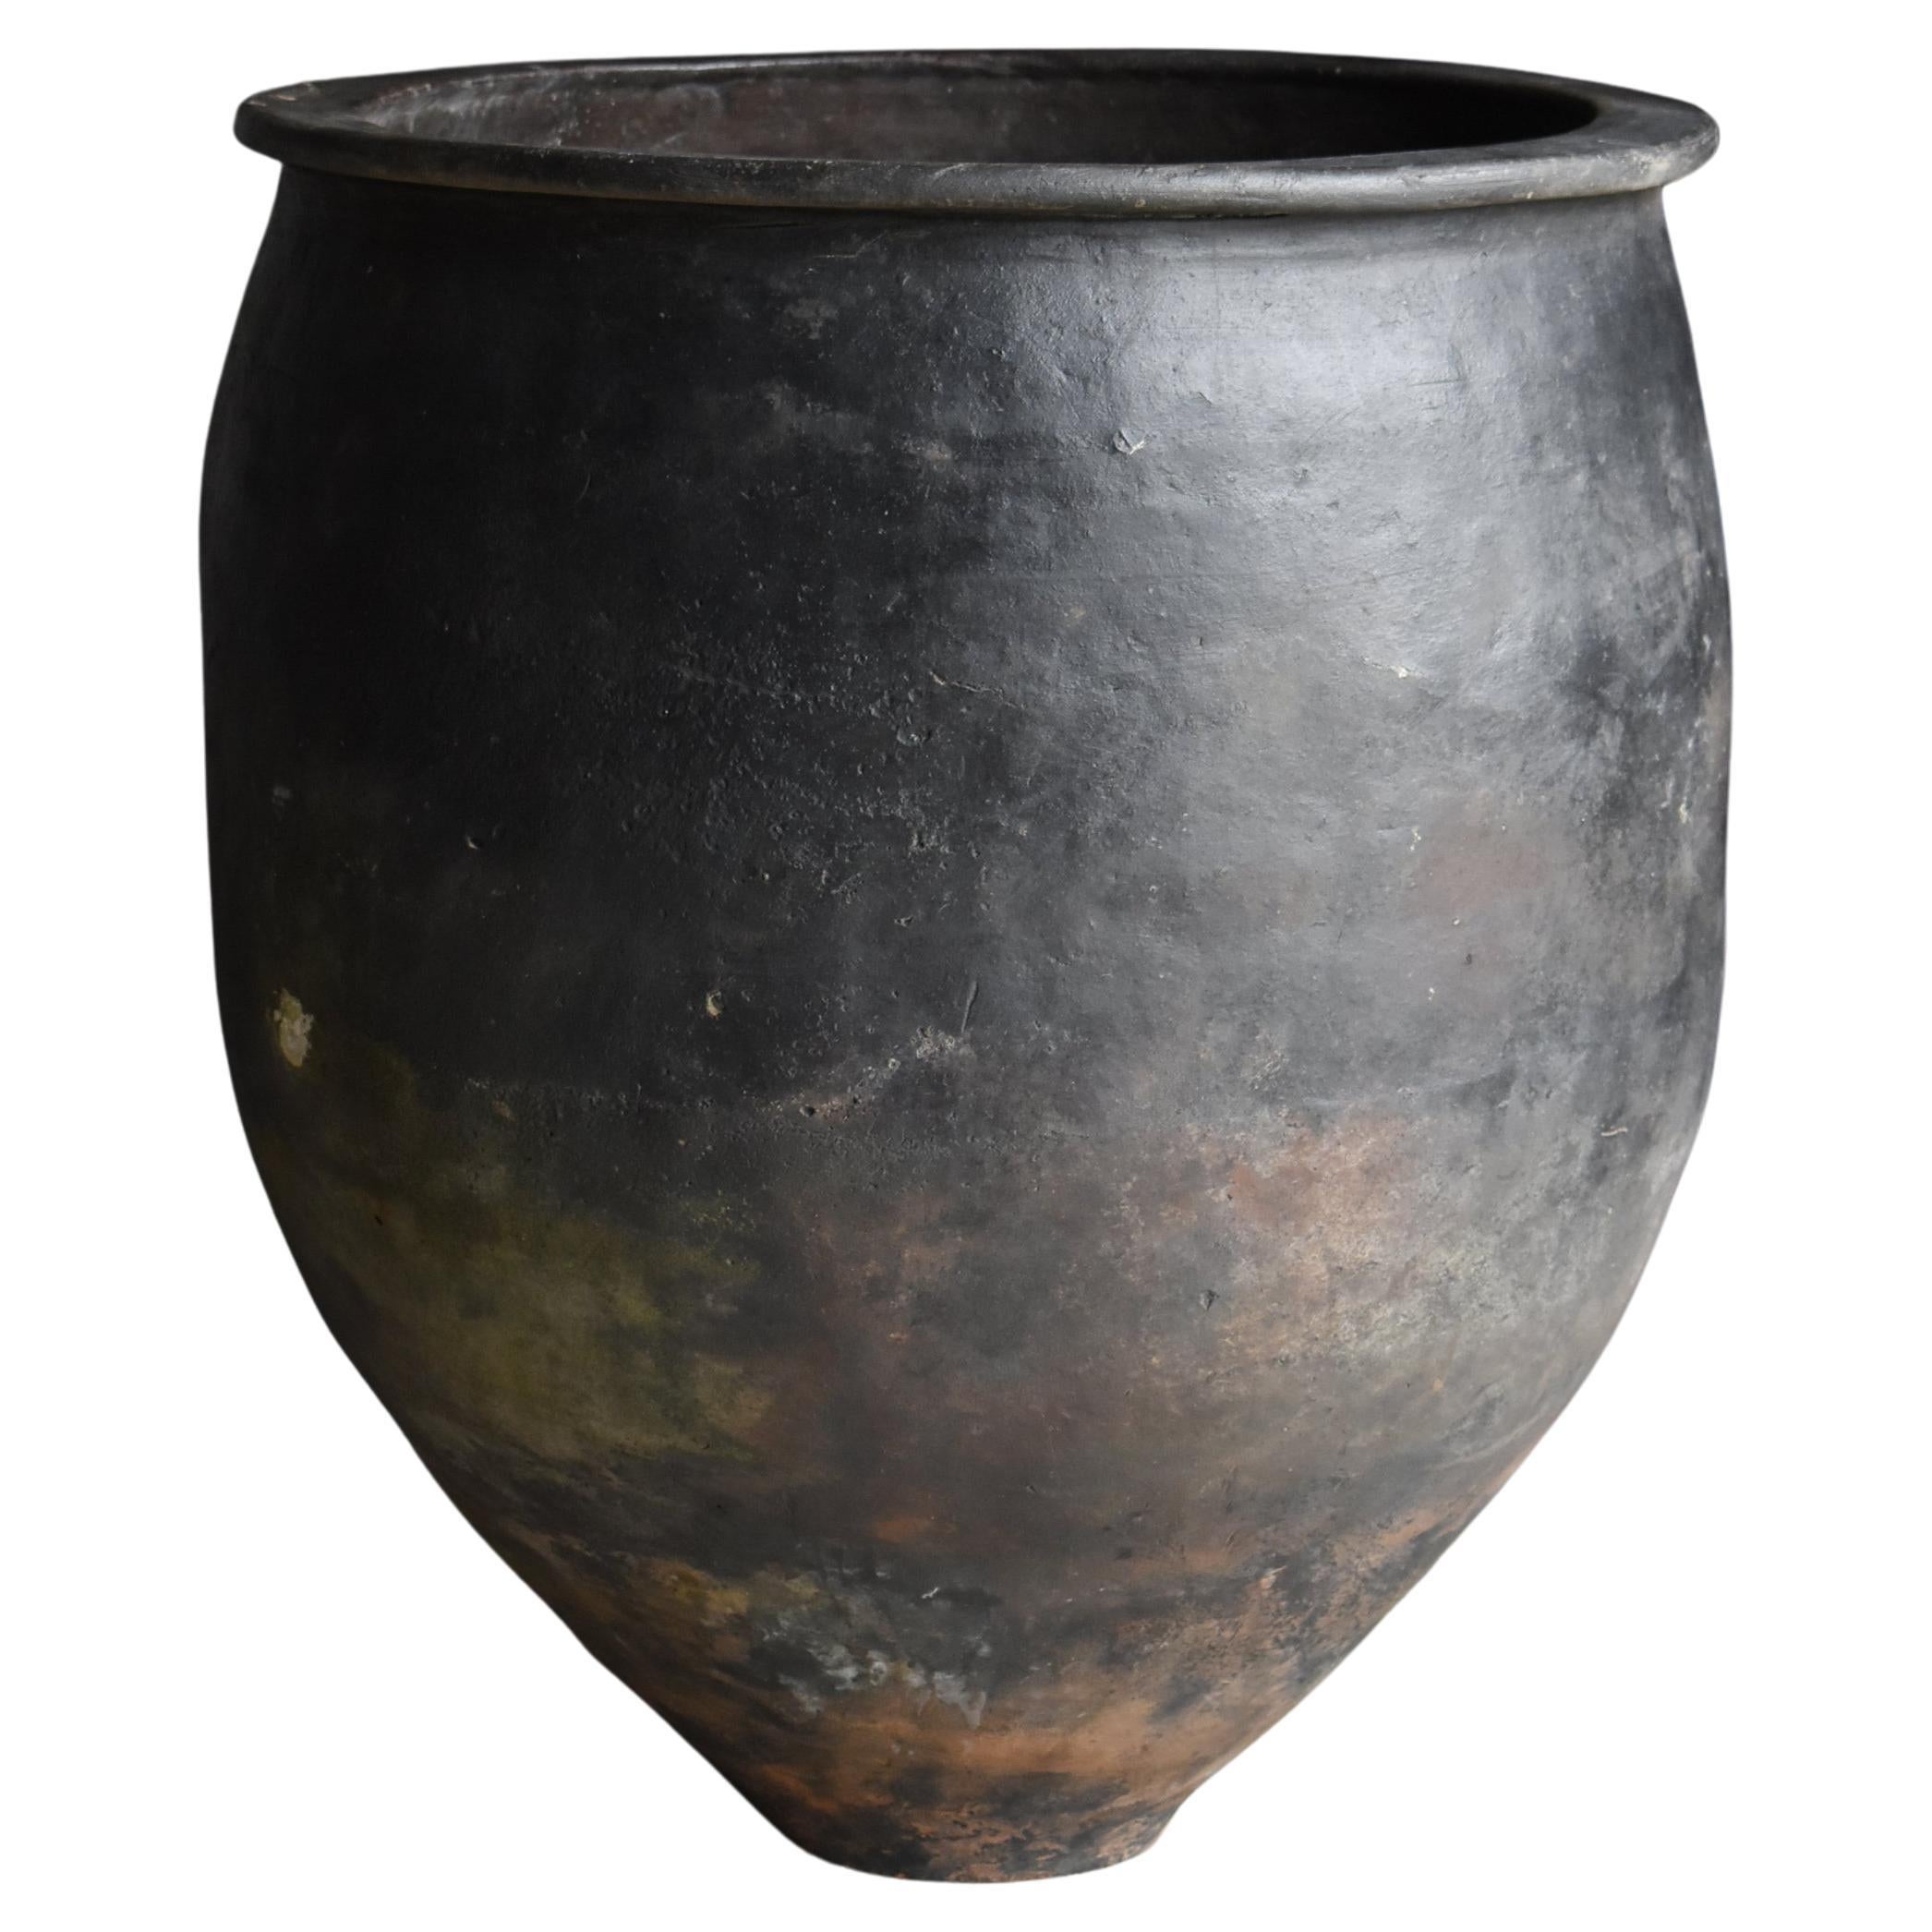 Japanese Antique Huge Indigo Dyed Jar 1860s-1920s / Pottery Vase Wabi Sabi